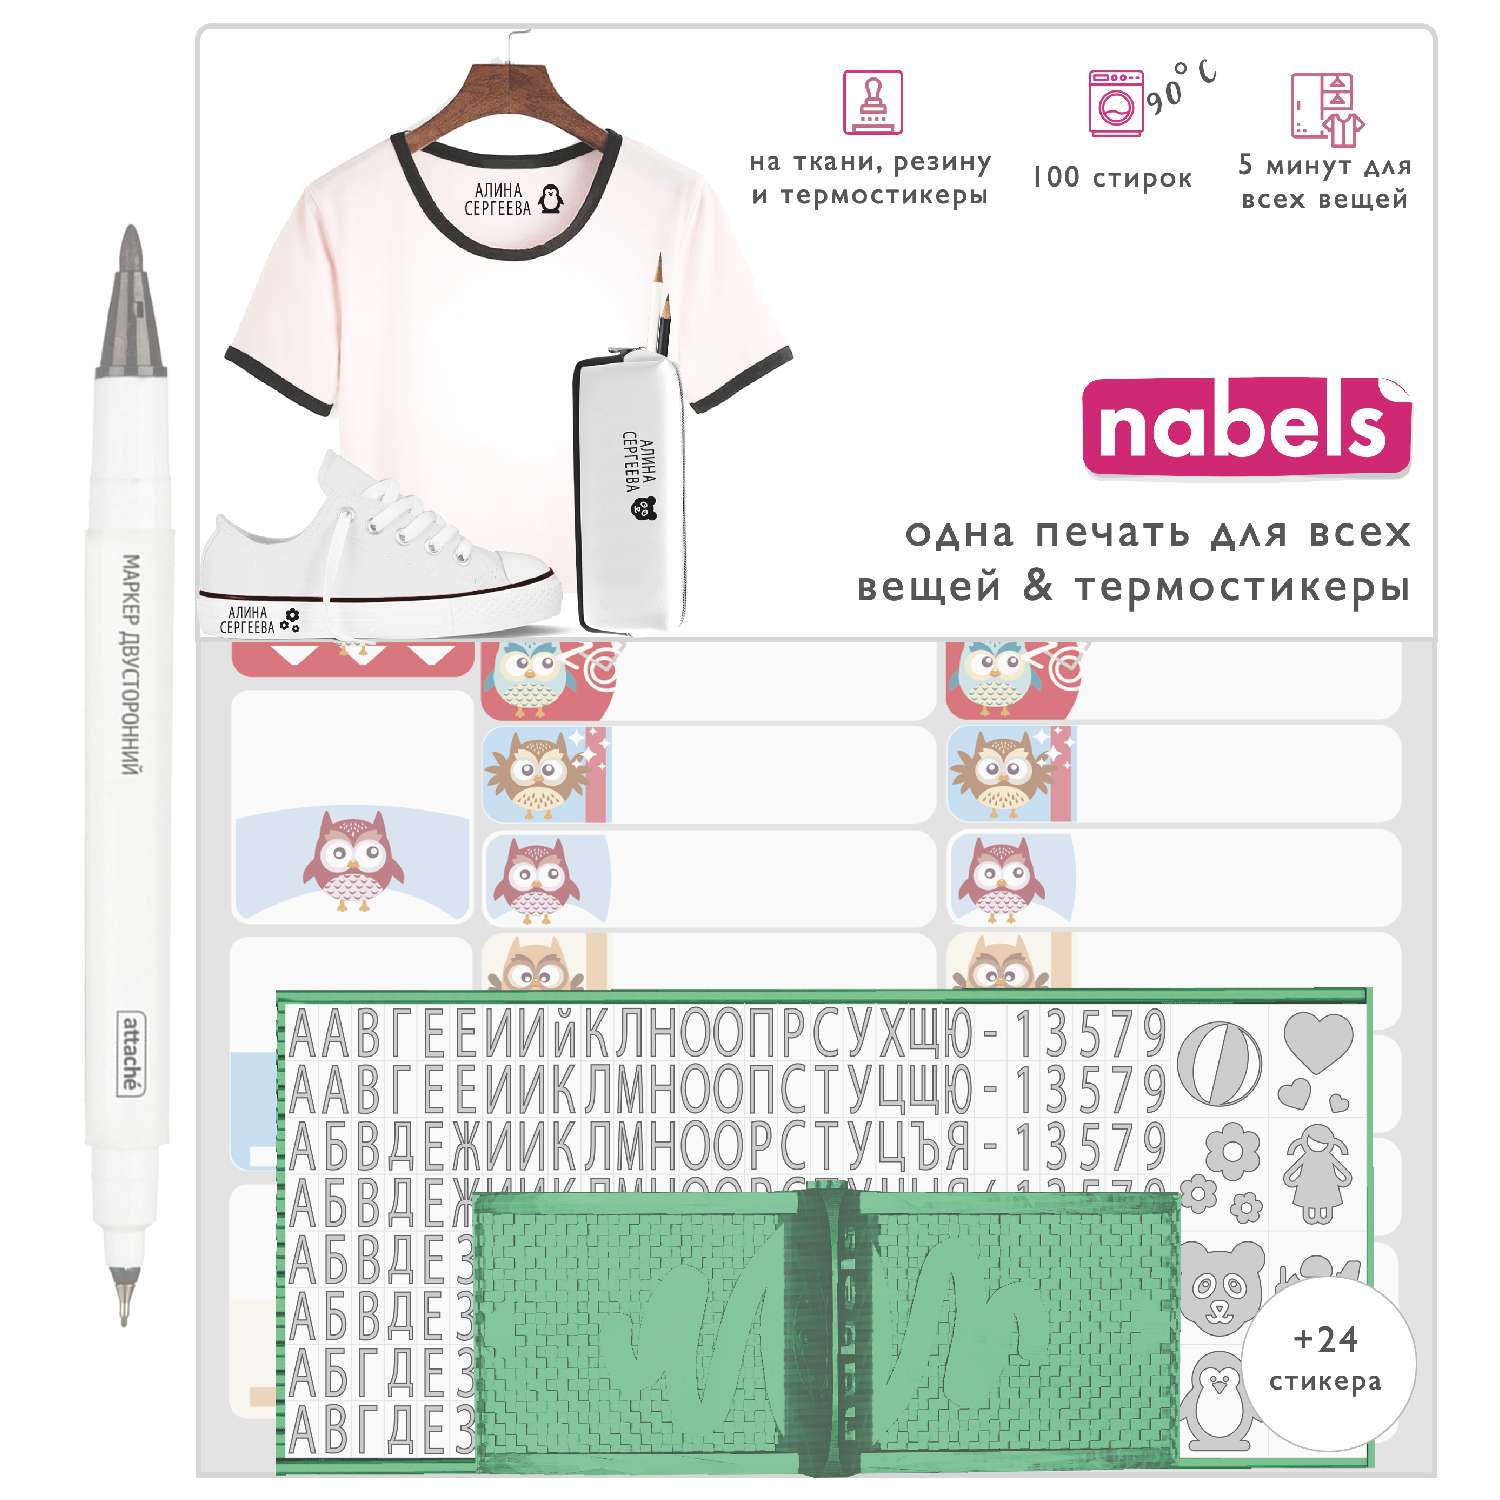 Набор Nabels для самонаборной печати и именные стикеры - термобирки Совята - фото 1